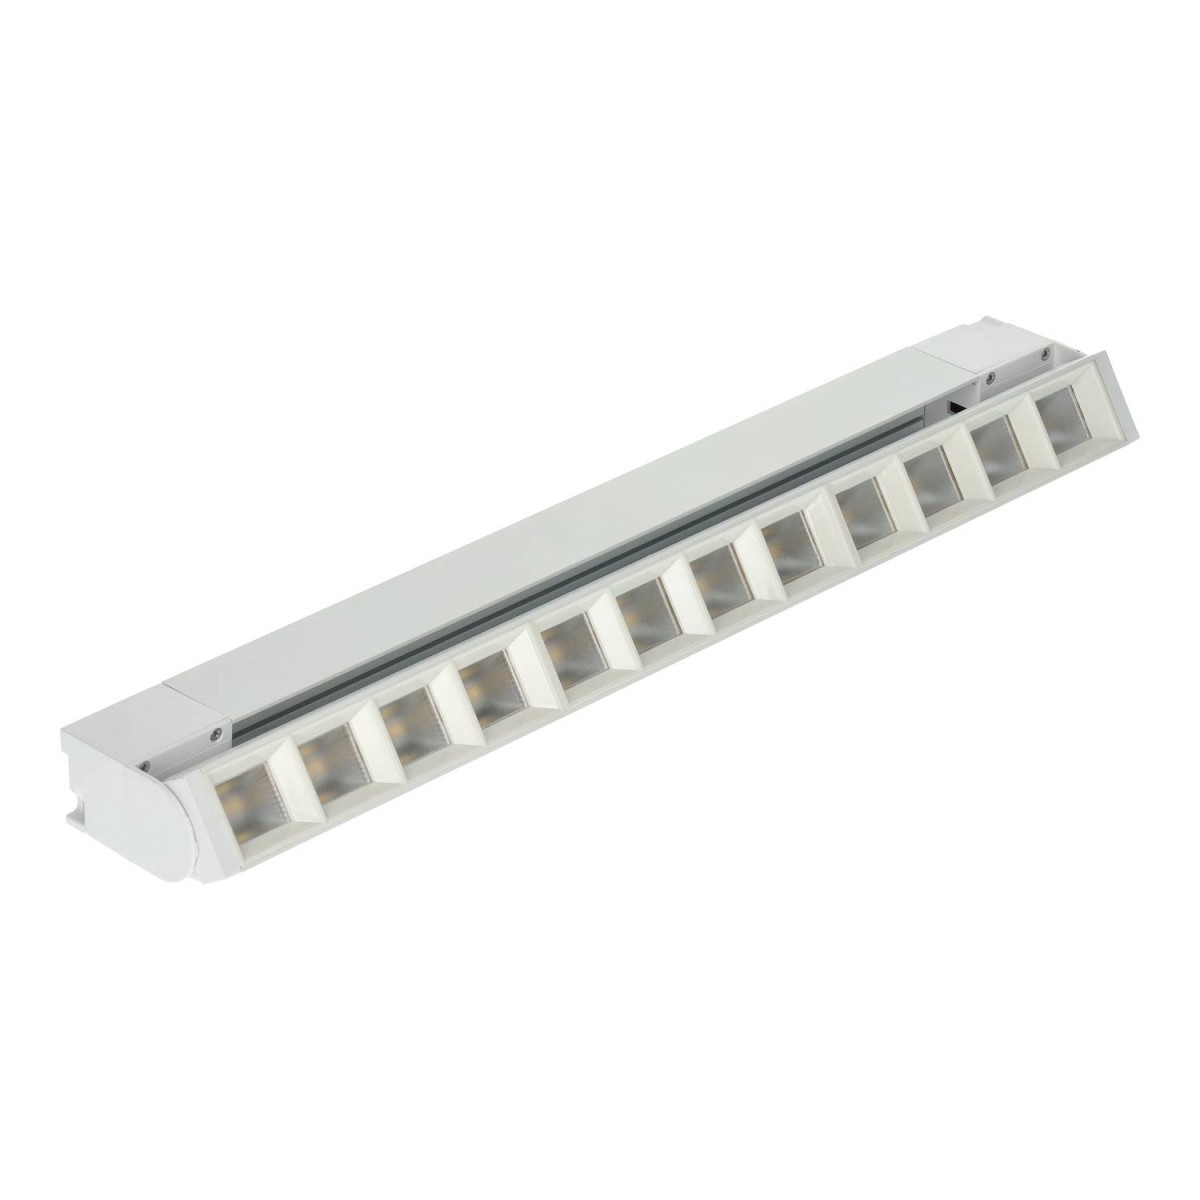 Projetor LED de calha linear 36W branco ajustável